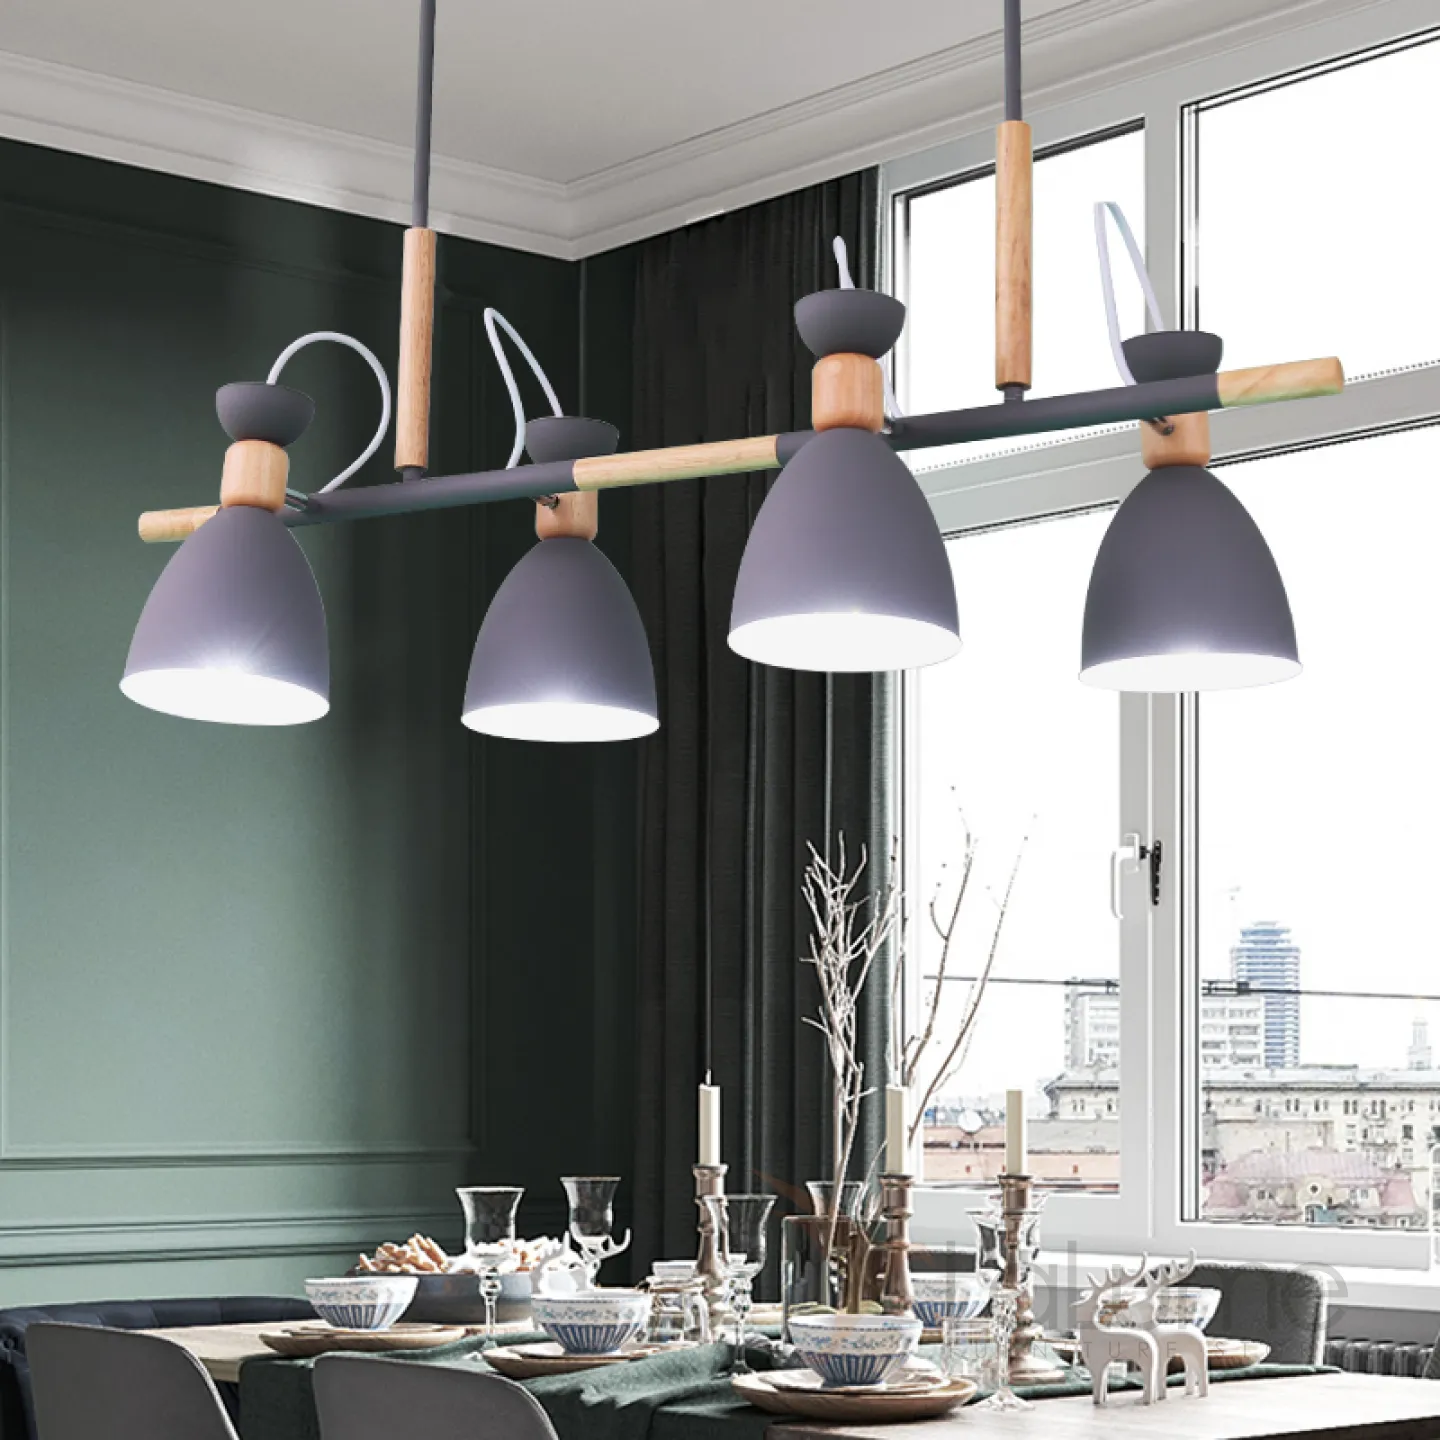 лампы на кухню подвесные над столом в стиле лофт